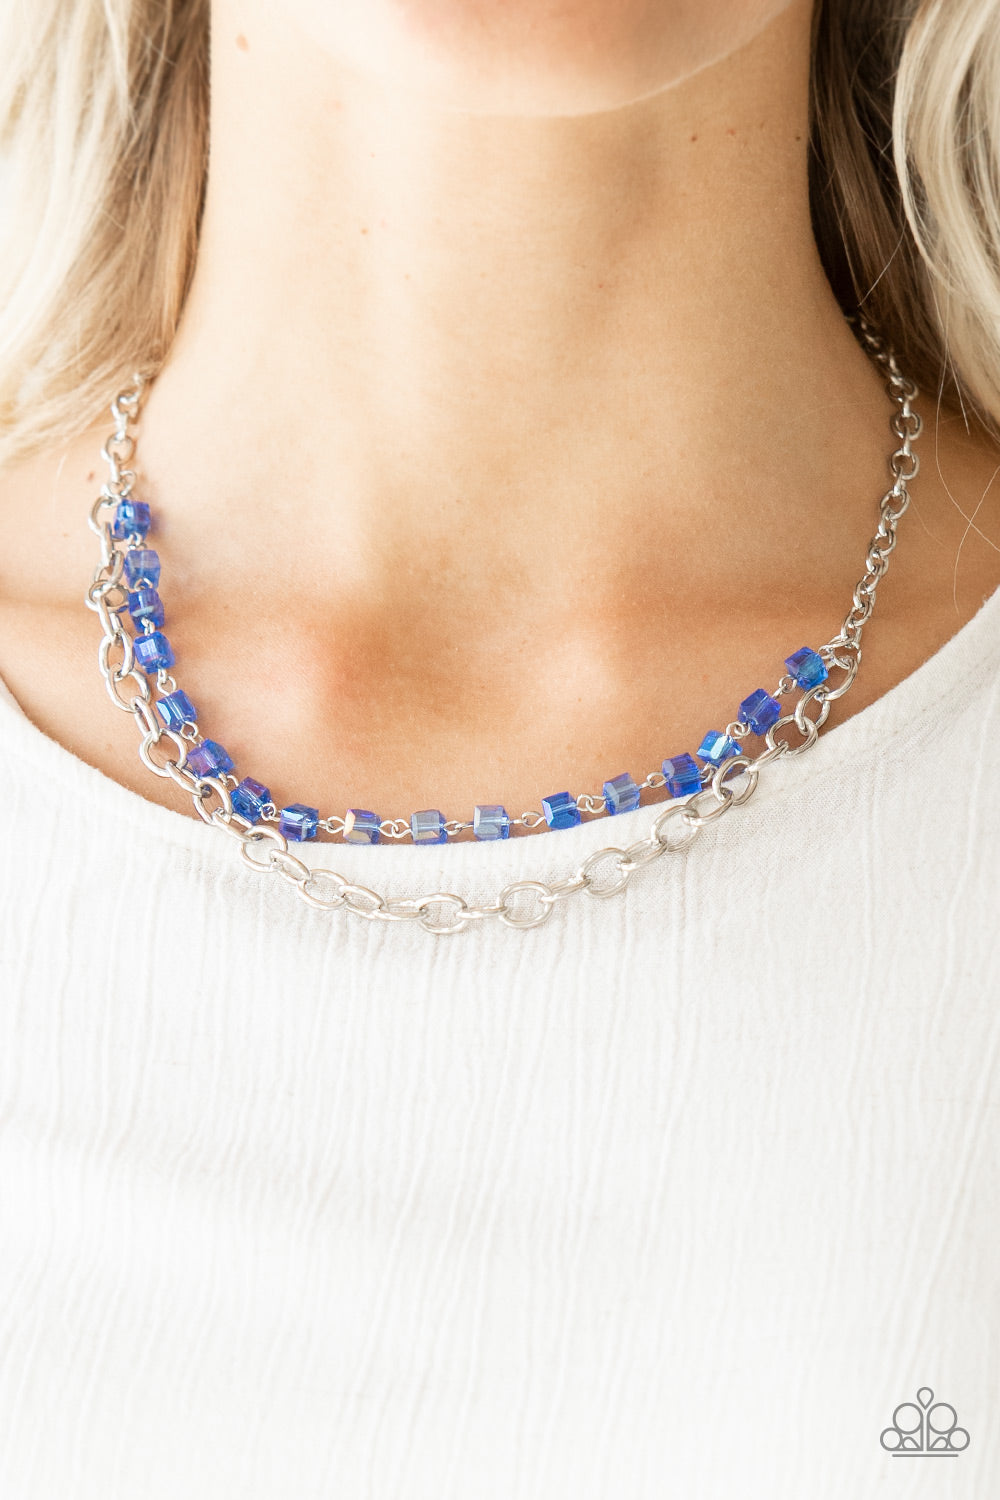 Block Party Princess Blue Necklace Paparazzi Accessories